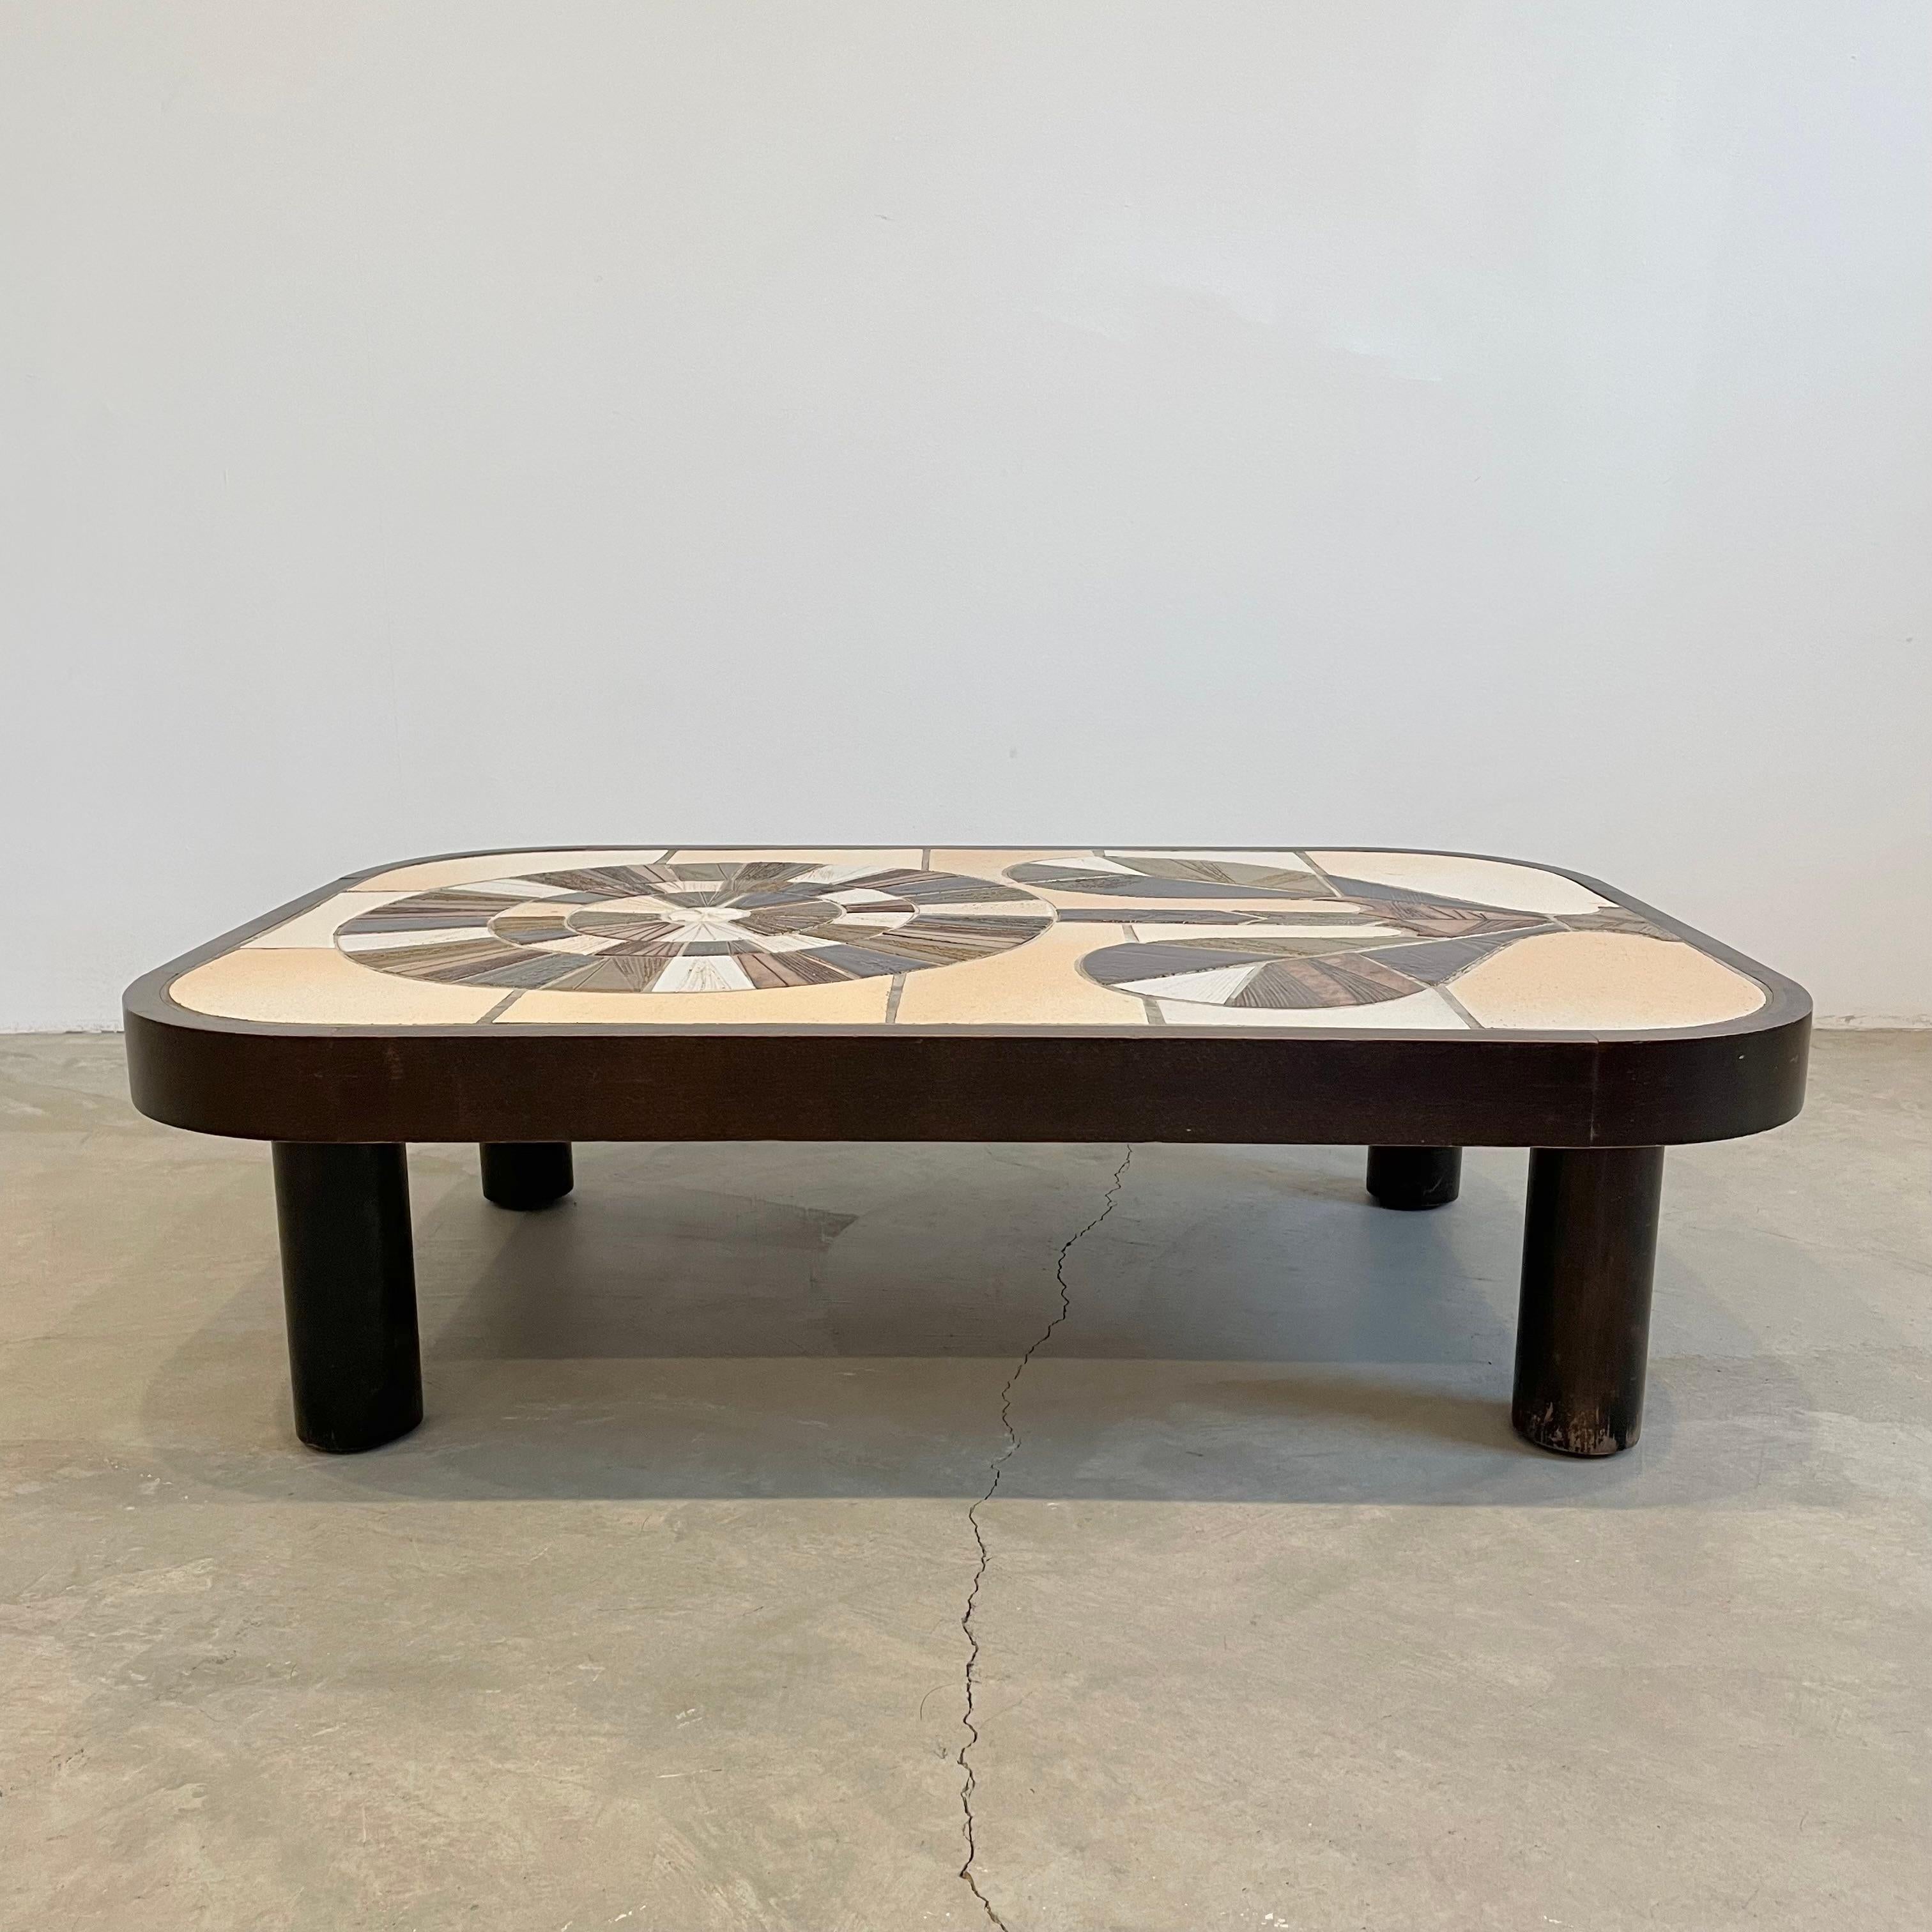 Magnifique table basse française avec des carreaux de céramique composés de manière complexe par l'artiste céramiste français Roger Capron. Il présente un motif vibrant d'une fleur créée par des carreaux de couleurs différentes s'inspirant du